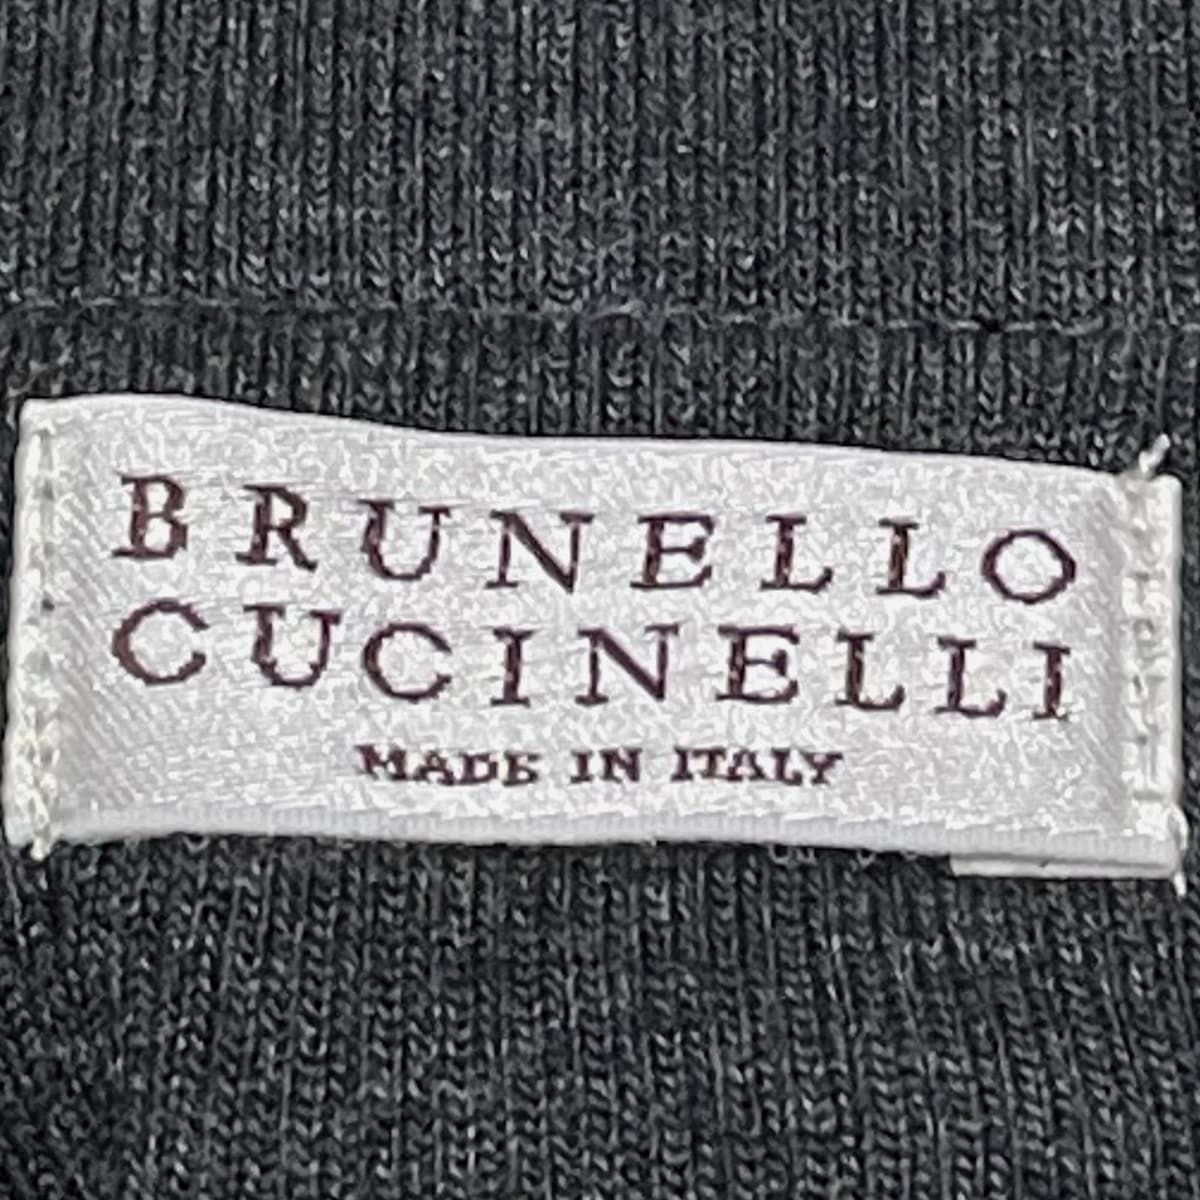 BRUNELLO CUCINELLI(ブルネロクチネリ) パンツ サイズ38 S レディース - ダークネイビー×ダークグレー  クロップド(半端丈)/チェック柄